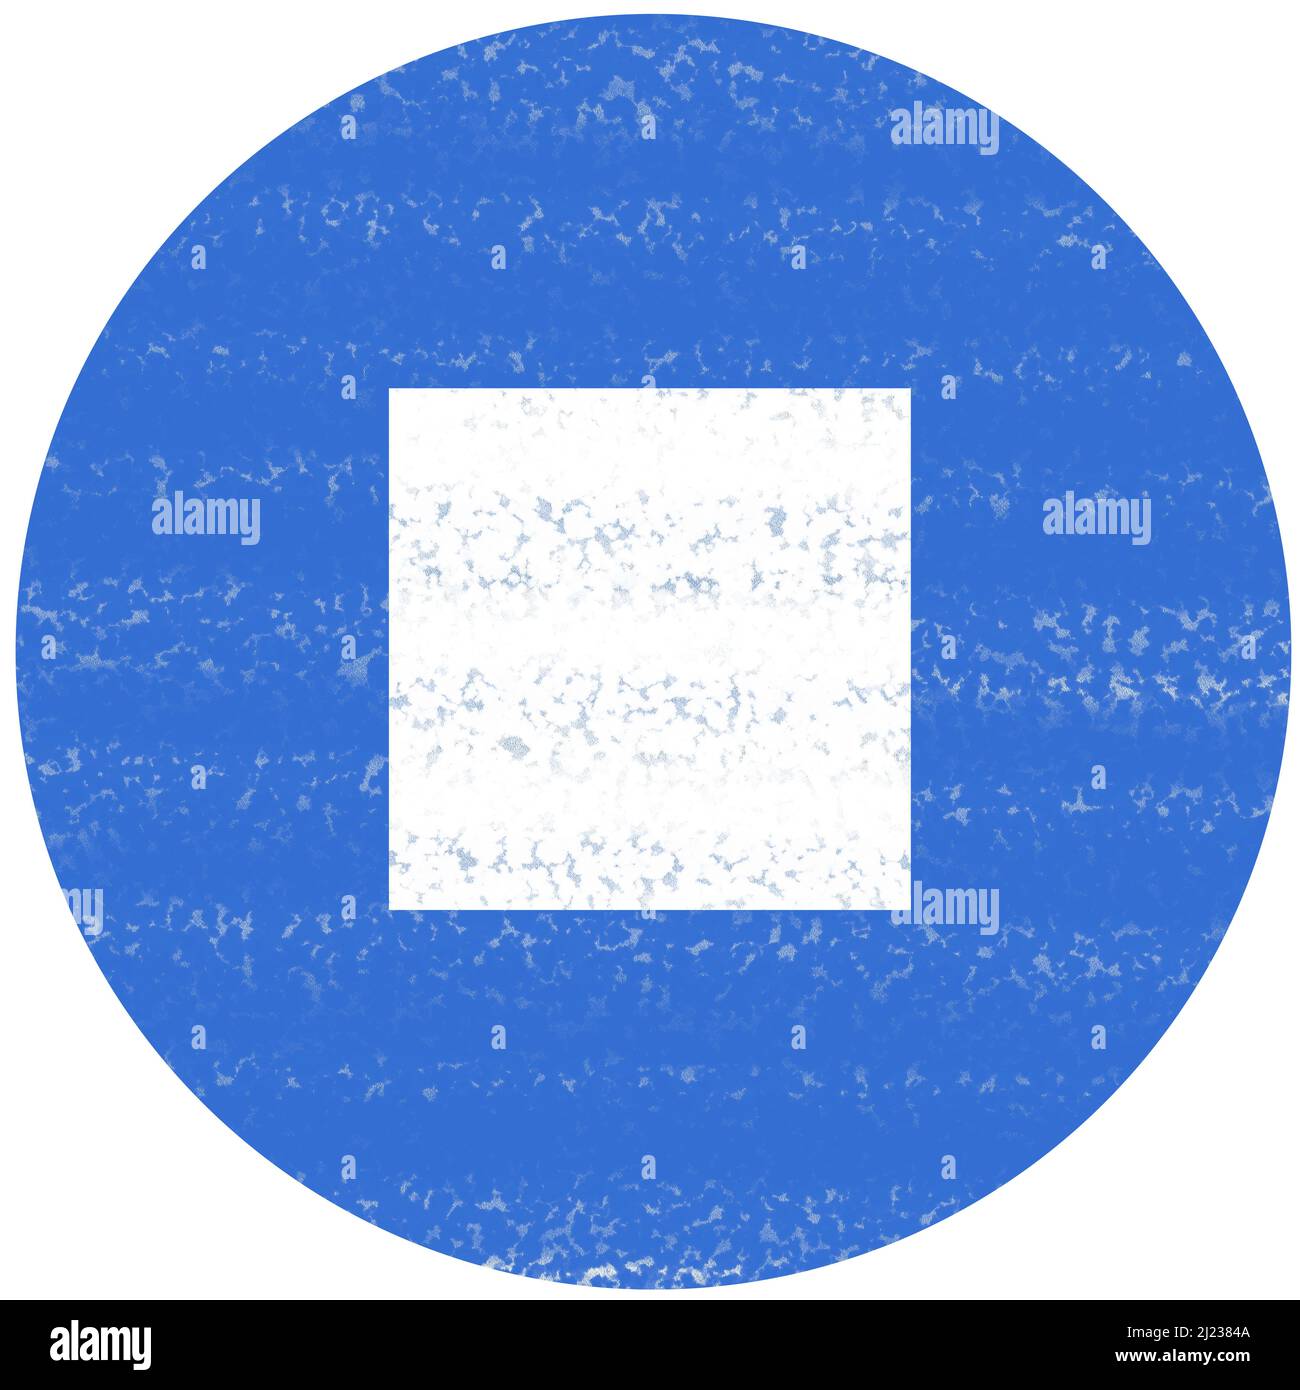 Illustration d'un carré blanc à l'intérieur d'un cercle bleu représentant un bouton d'arrêt d'un lecteur multimédia. Le tracé de couleur imite les coups de pinceau. Banque D'Images